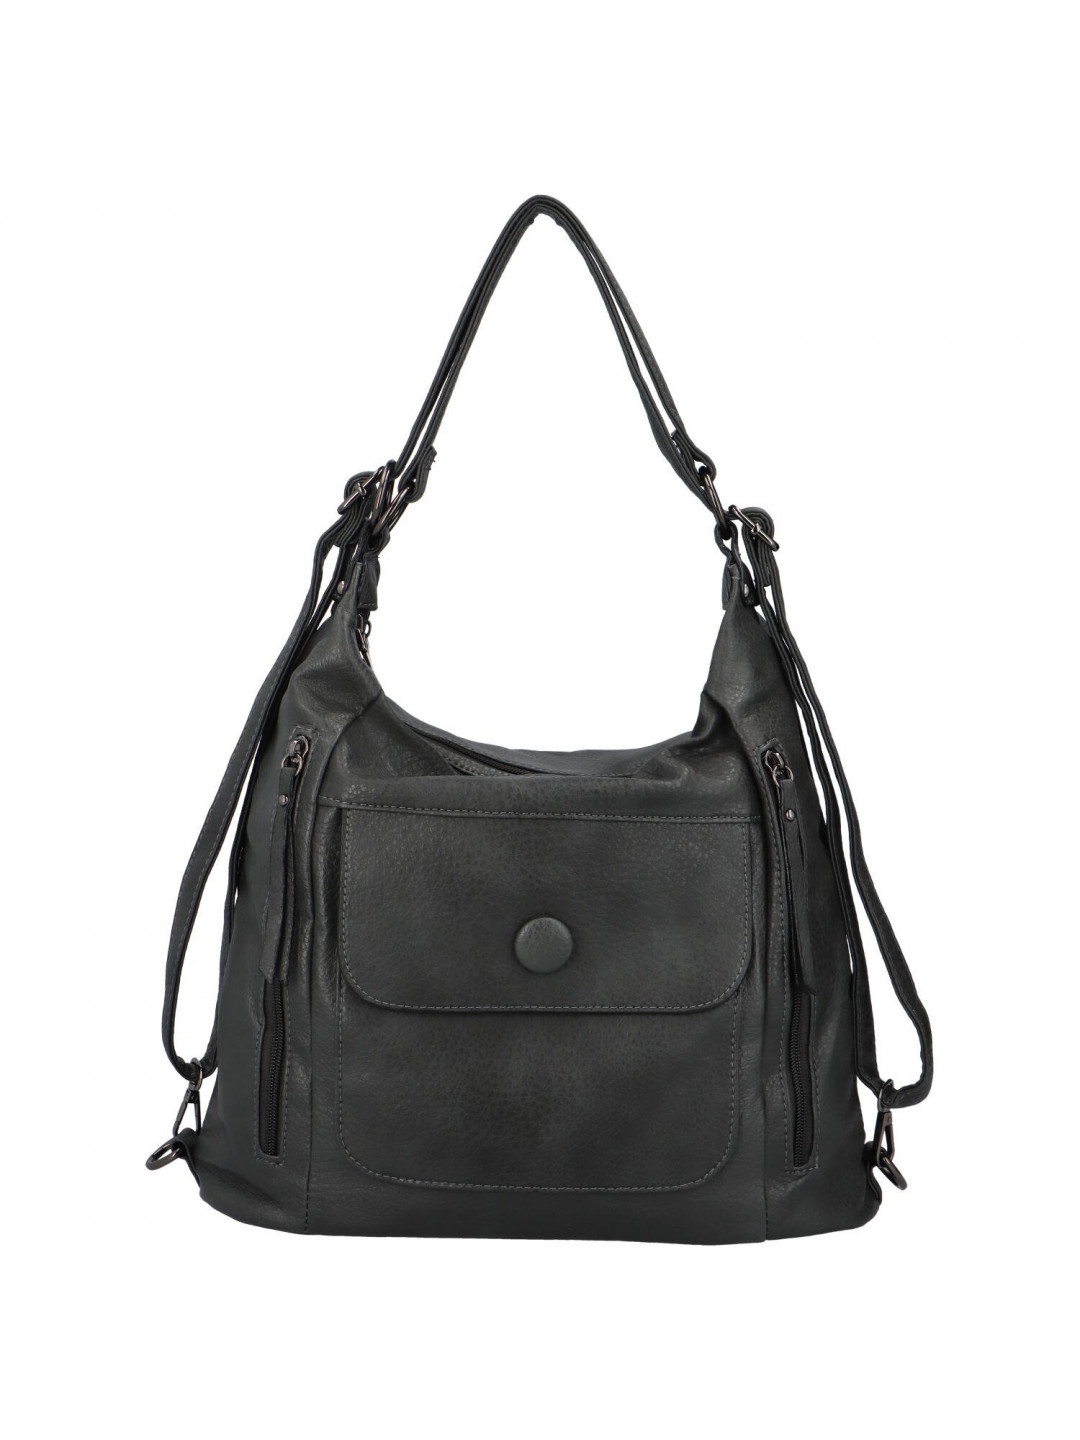 Trendová dámská kabelka batoh Retion tmavě šedá